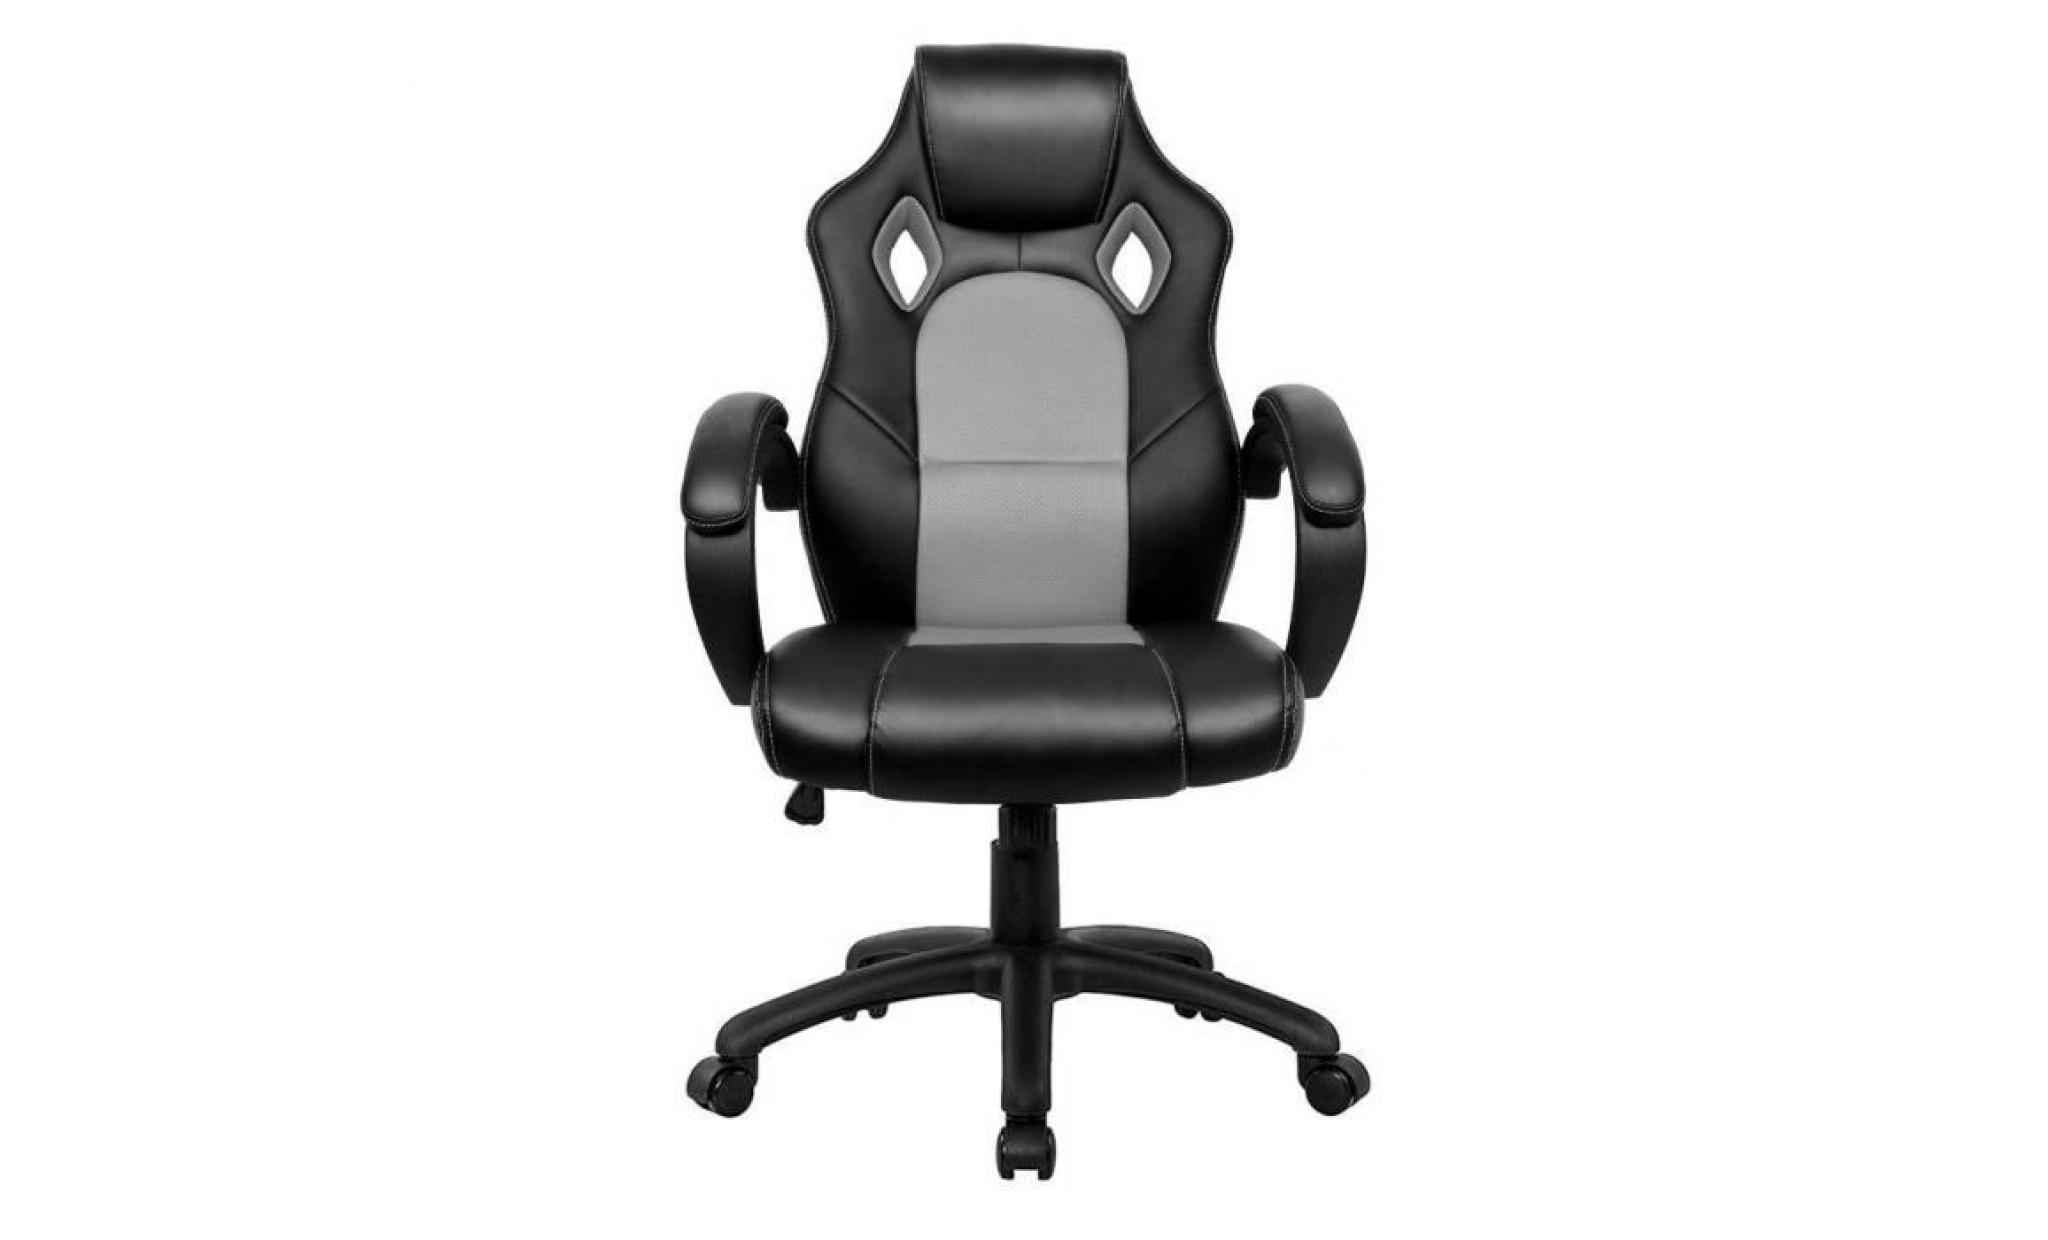 fauteuil de bureau chaise de bureau   moderne confortable ergonomique en similicuir   hauteur réglable   rouge   intimate wm heart pas cher